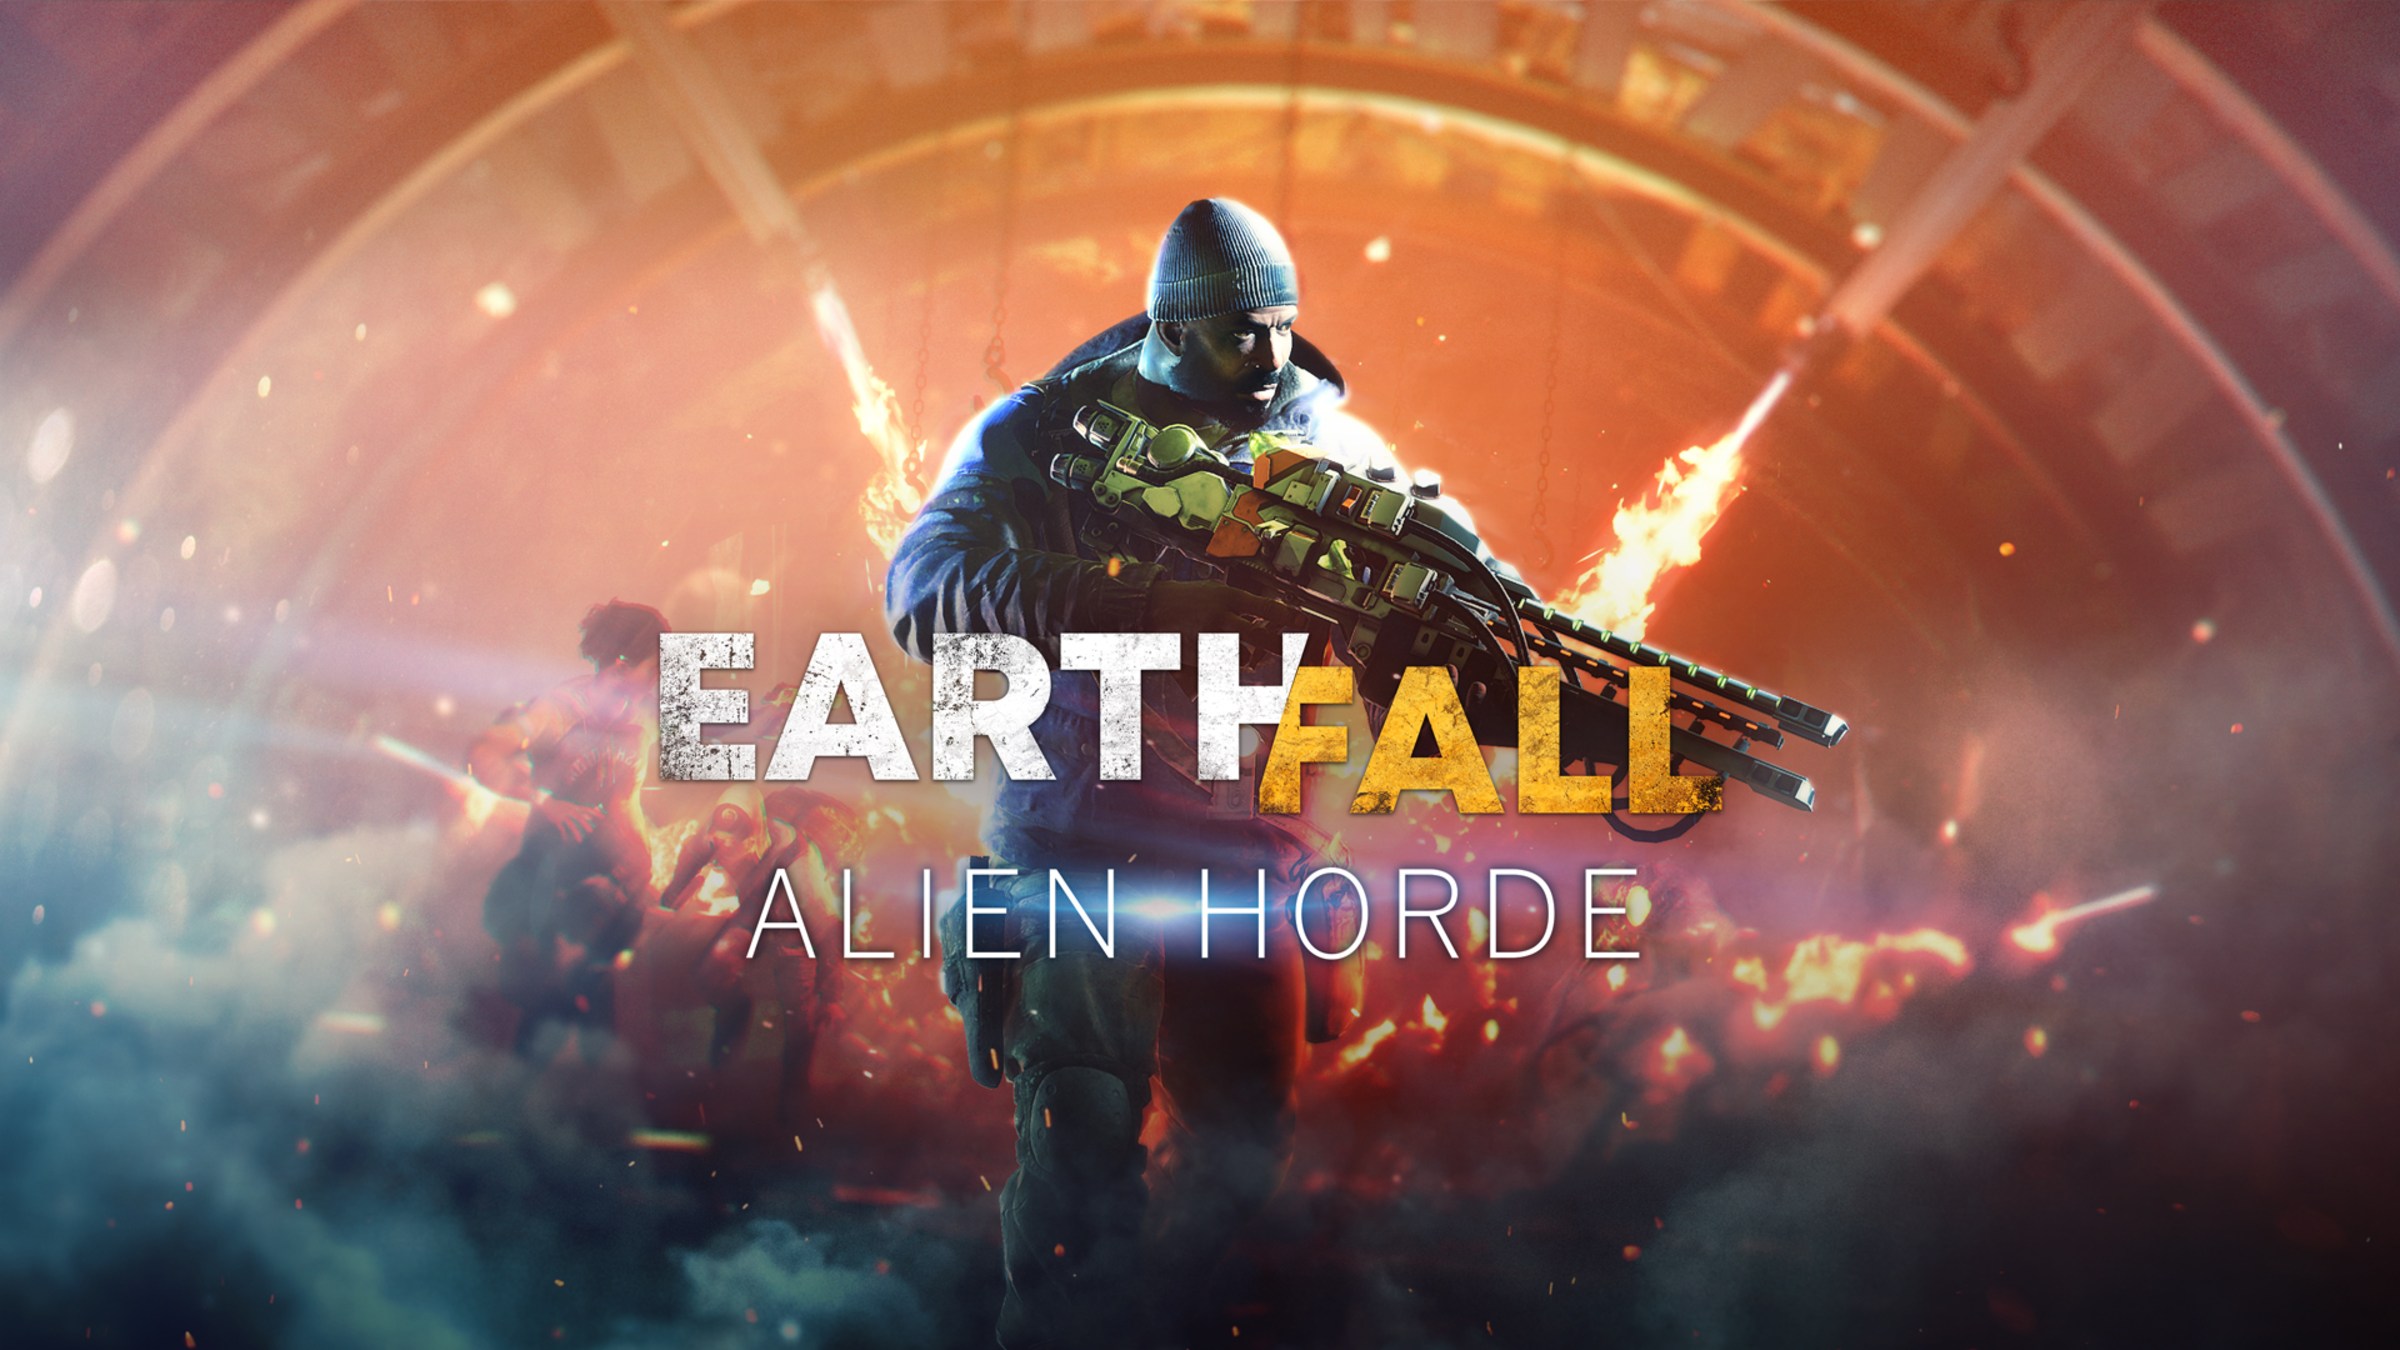 Earthfall Alien Horde for Nintendo Switch